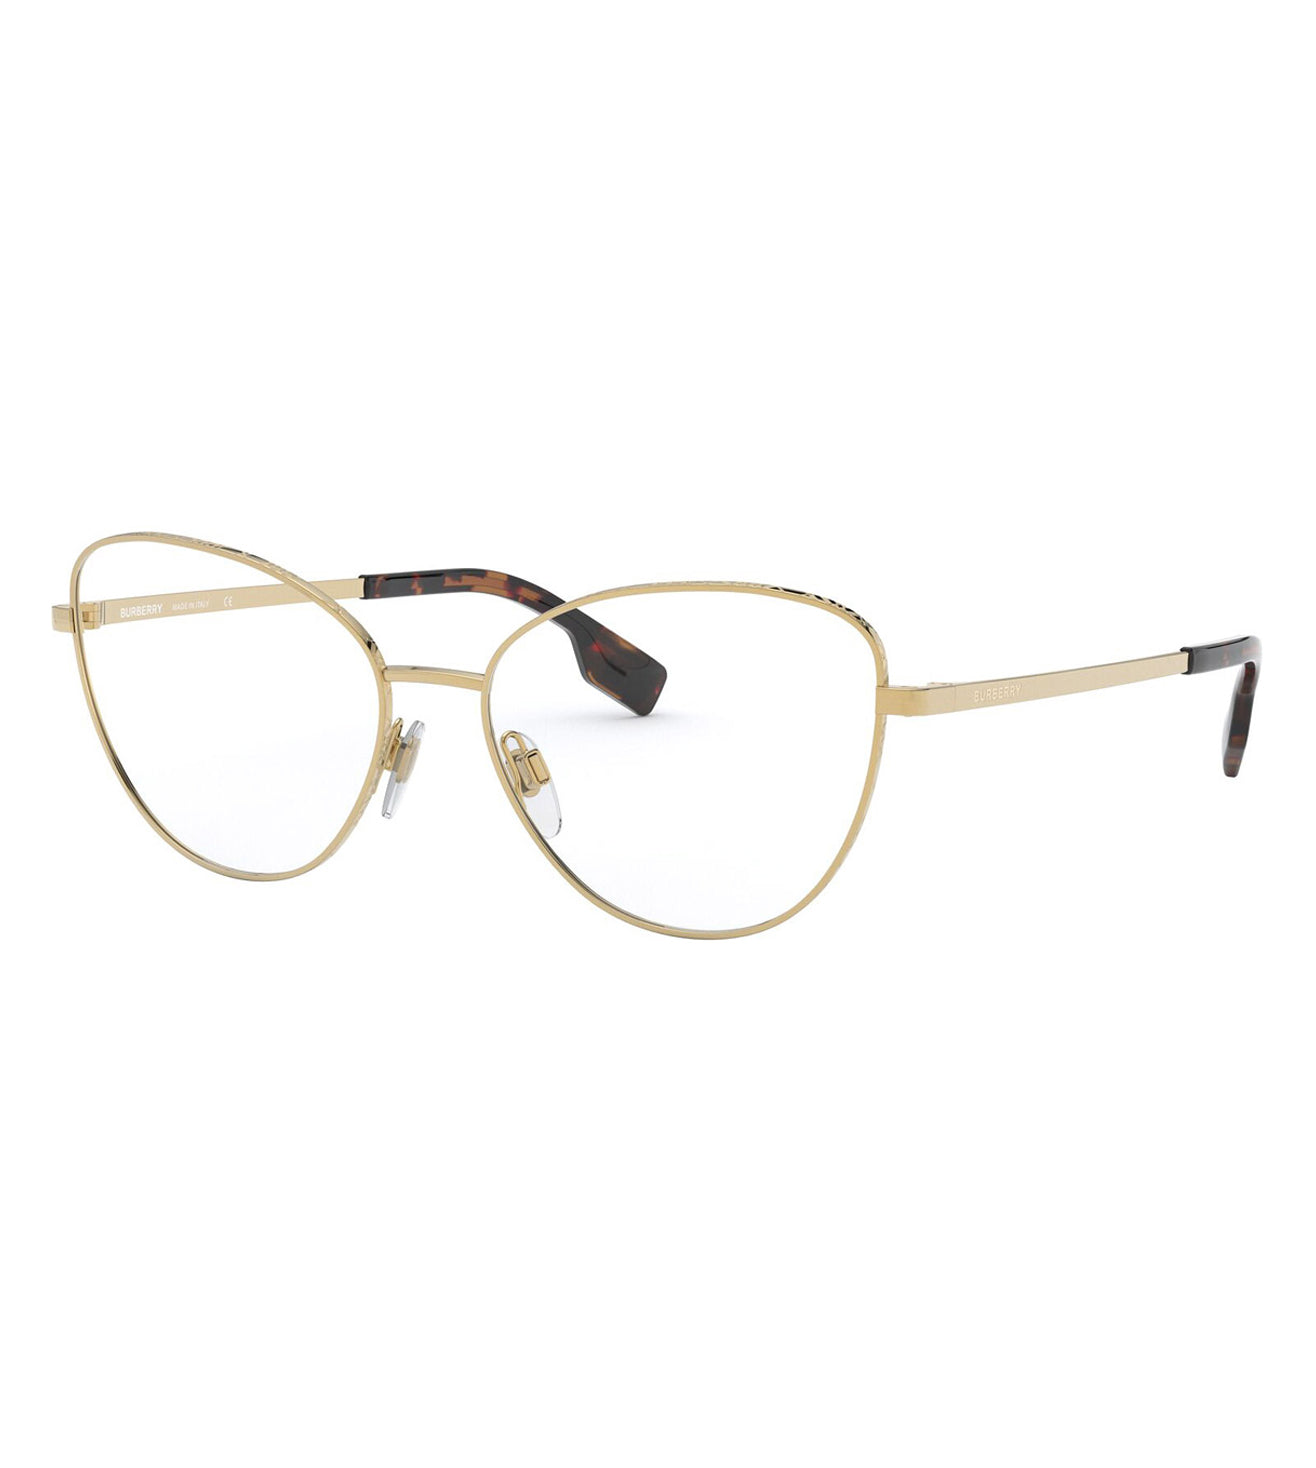 Burberry Women's Gold Cat-eye Optical Frames